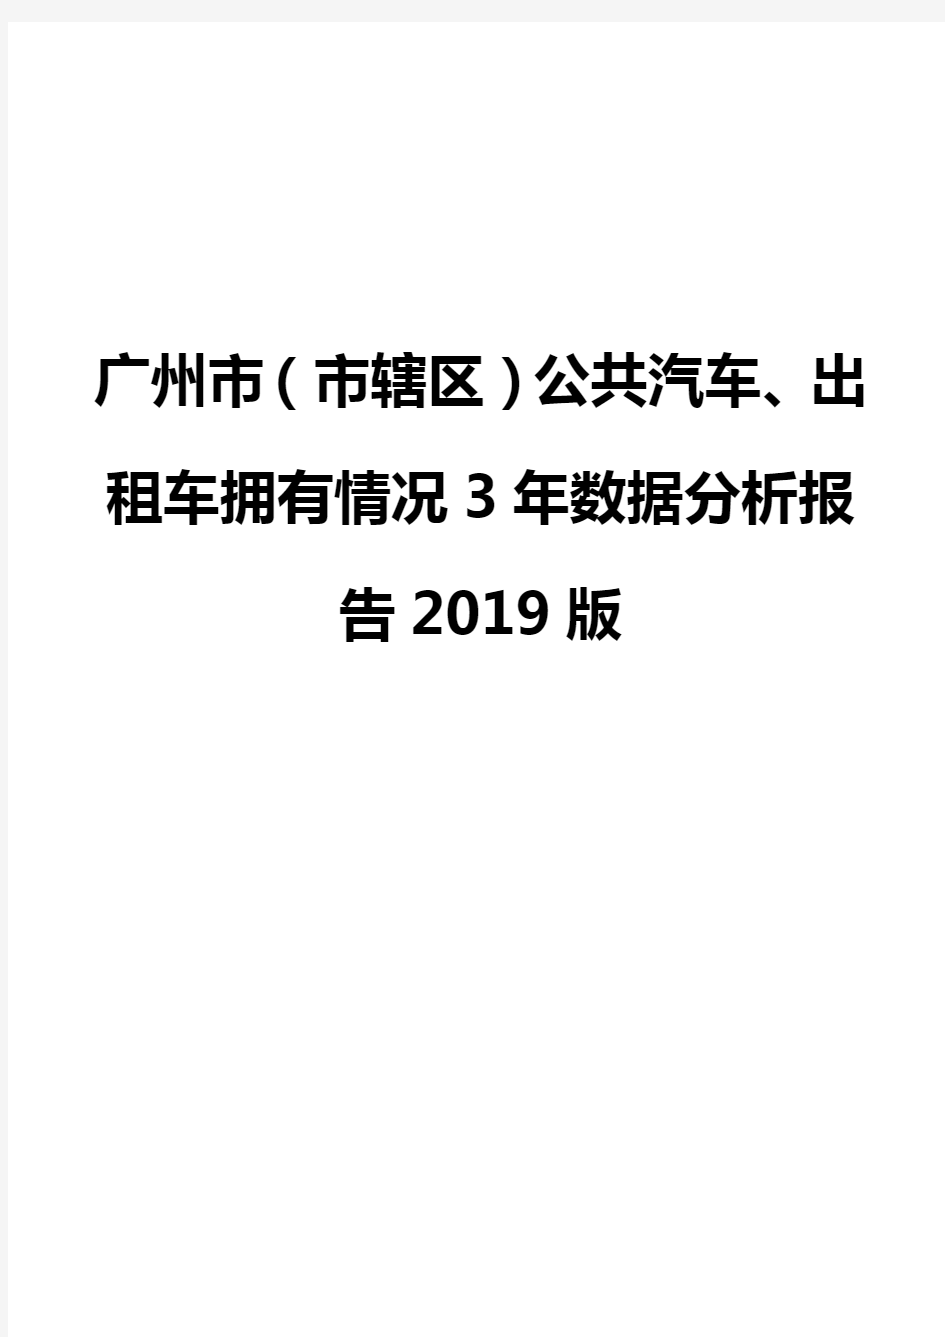 广州市(市辖区)公共汽车、出租车拥有情况3年数据分析报告2019版